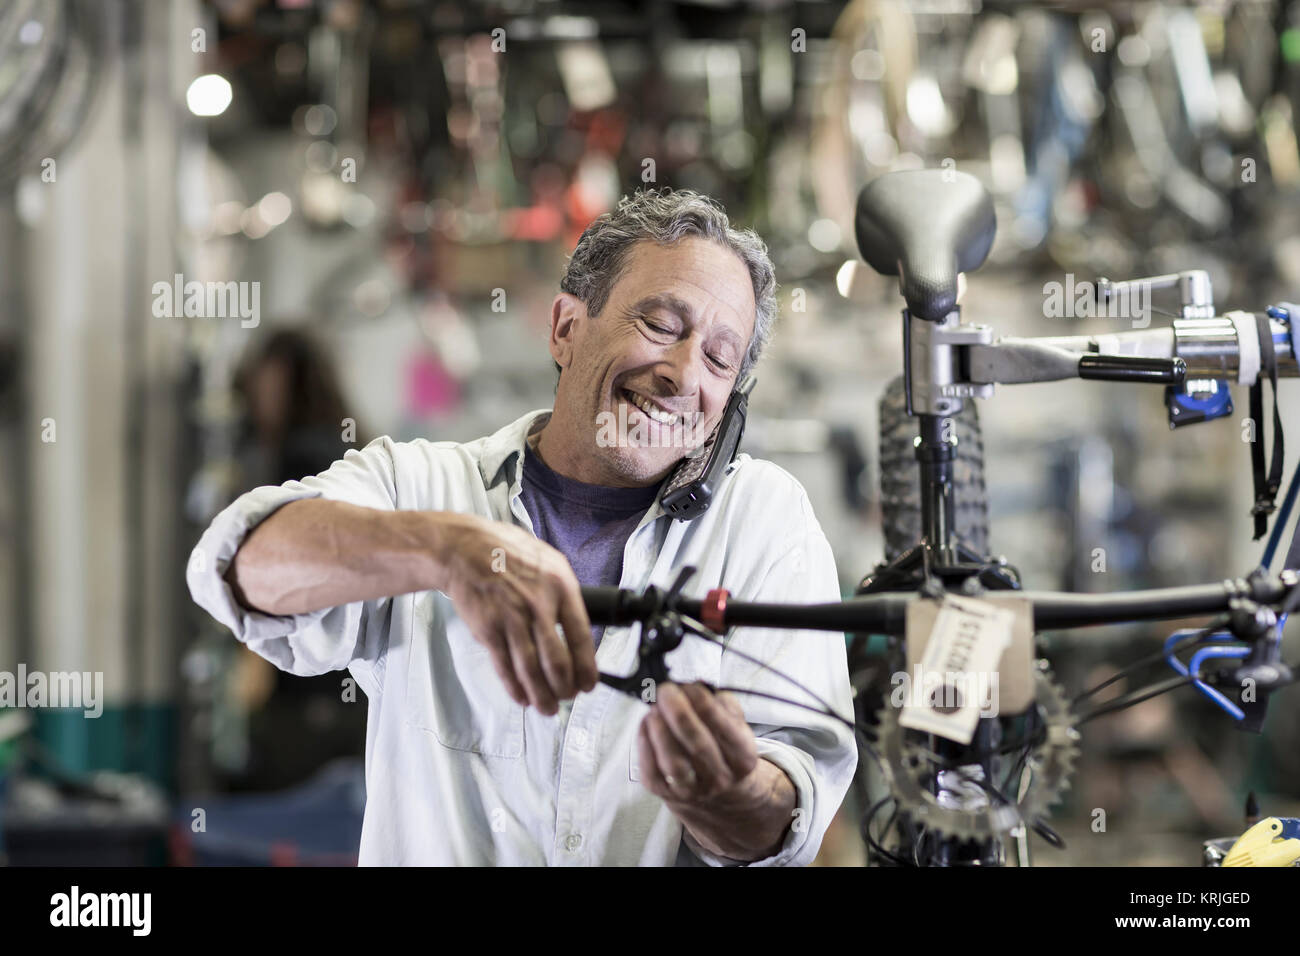 Caucasian hombre hablando por teléfono y reparación de frenos en bicicleta Foto de stock